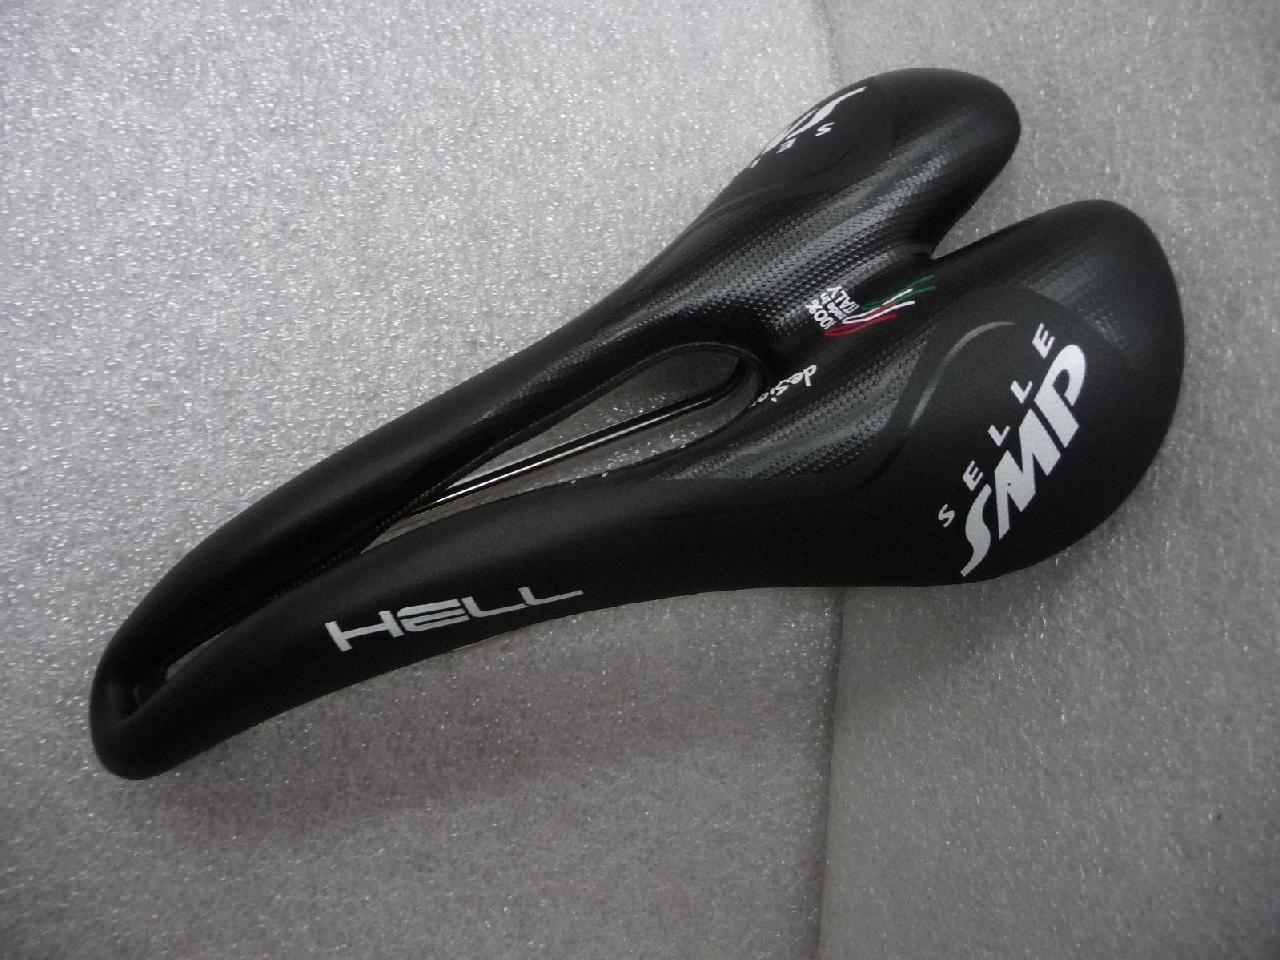 SELLE SMP(セラ エスエムピー) HELL(ヘル) ブラック サドル自転車